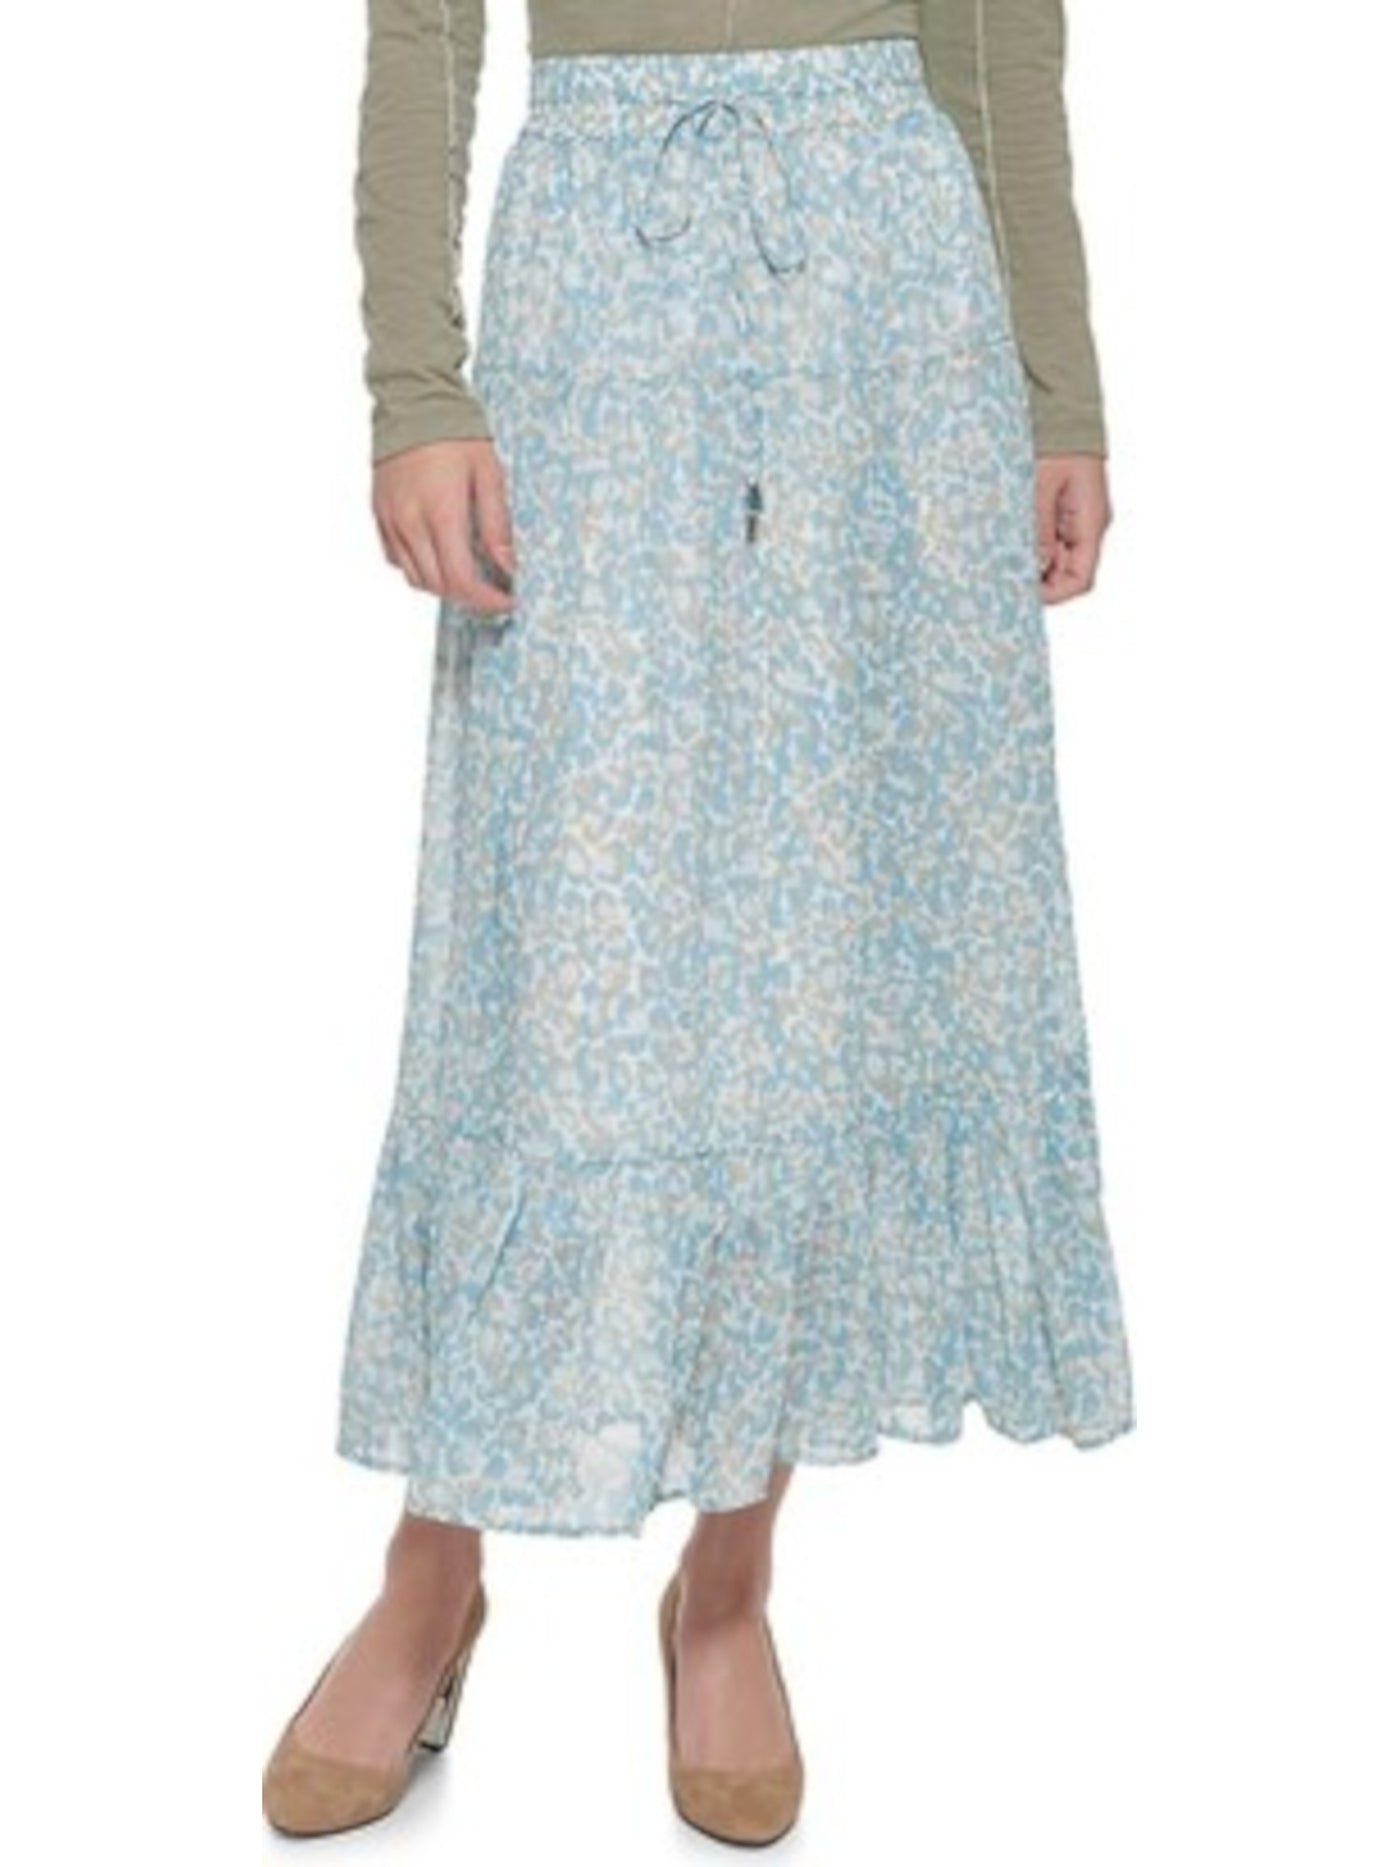 DKNY Womens Blue Animal Print Tea-Length A-Line Skirt XL